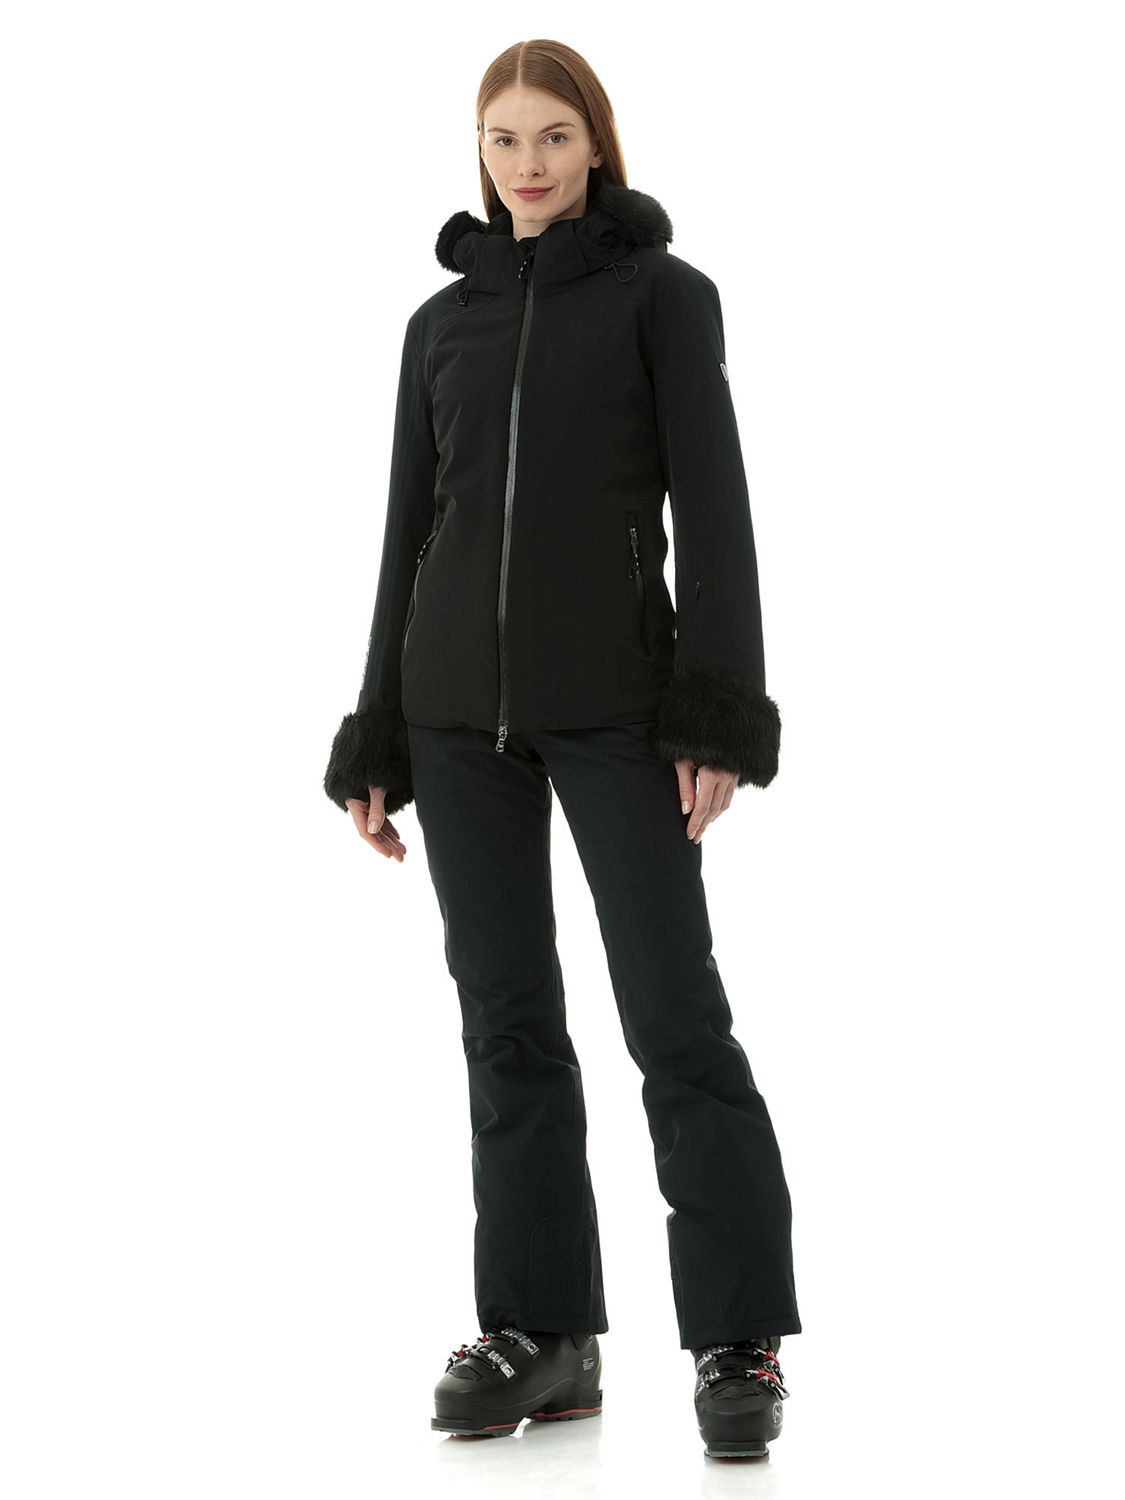 Куртка горнолыжная EA7 Emporio Armani Ski Kitzbuhel Toray Black